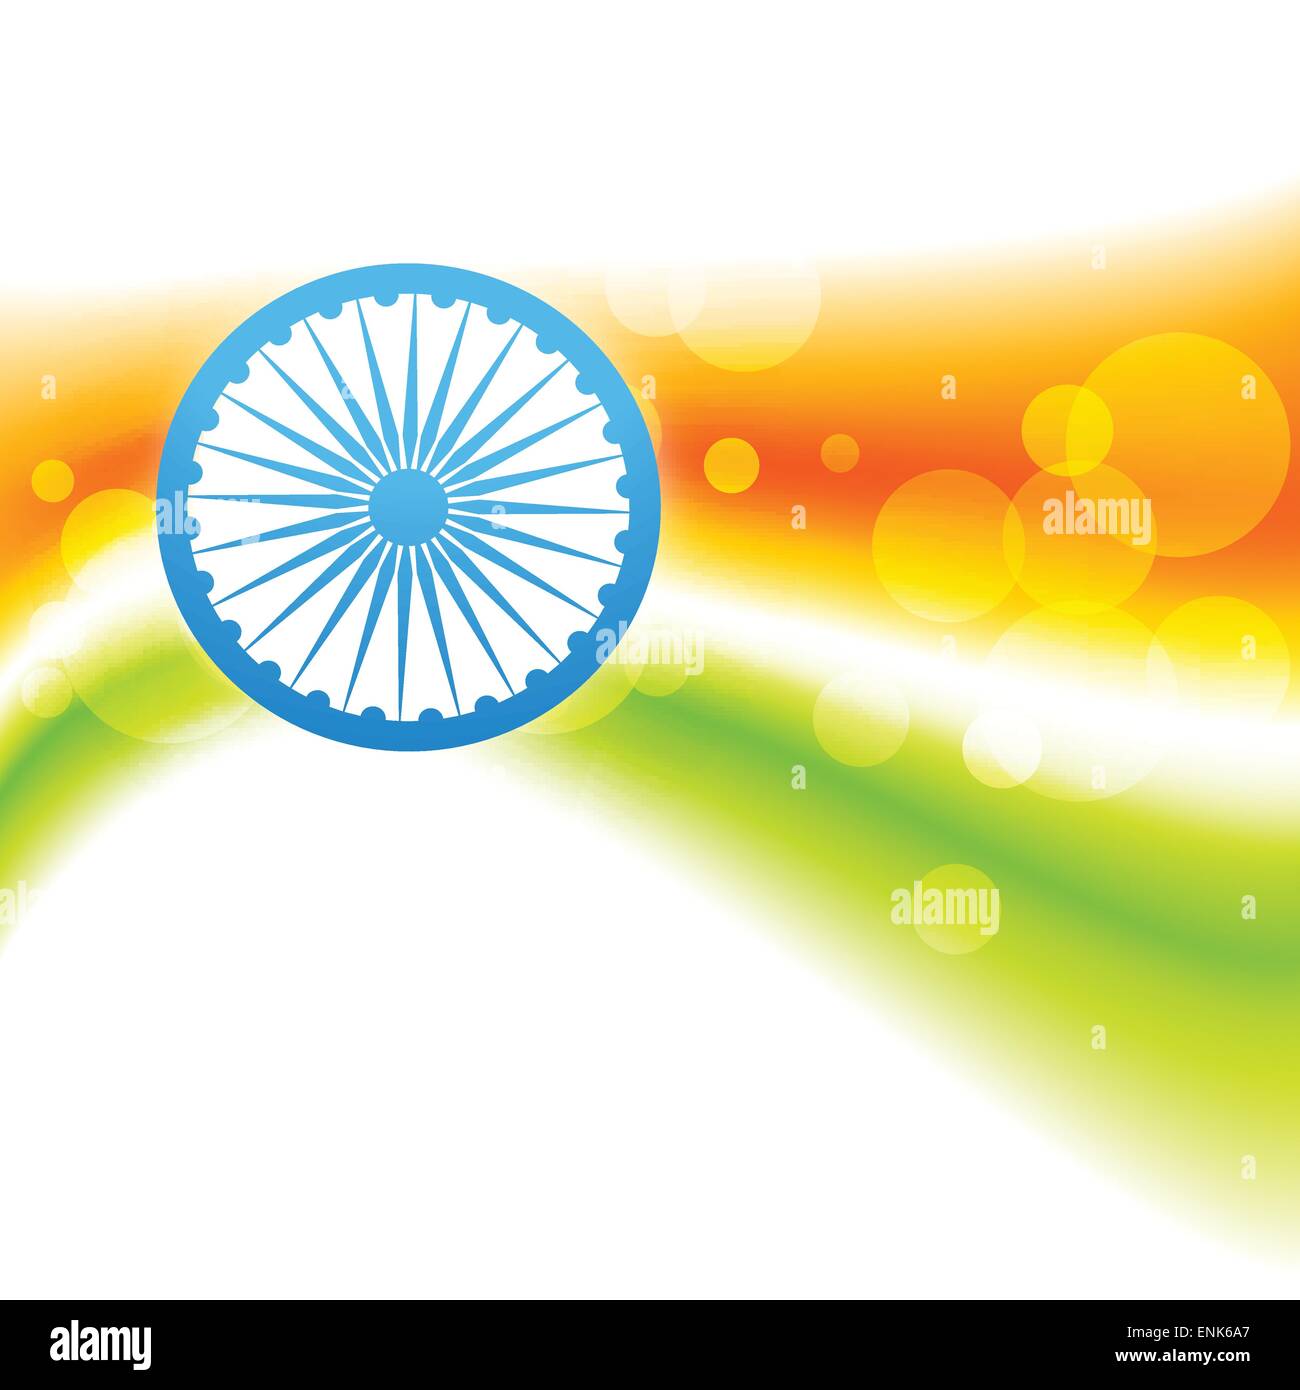 Thiết kế vector của lá cờ Ấn Độ sẽ làm bạn cảm thấy cảm động và tự hào về quốc gia của mình. Tảo sáng bằng cách lựa chọn thiết kế vector này làm hình nền điện thoại, máy tính hoặc thậm chí là in lên áo phông của bạn. Nó chắc chắn sẽ thu hút sự chú ý và sự ngưỡng mộ của mọi người!